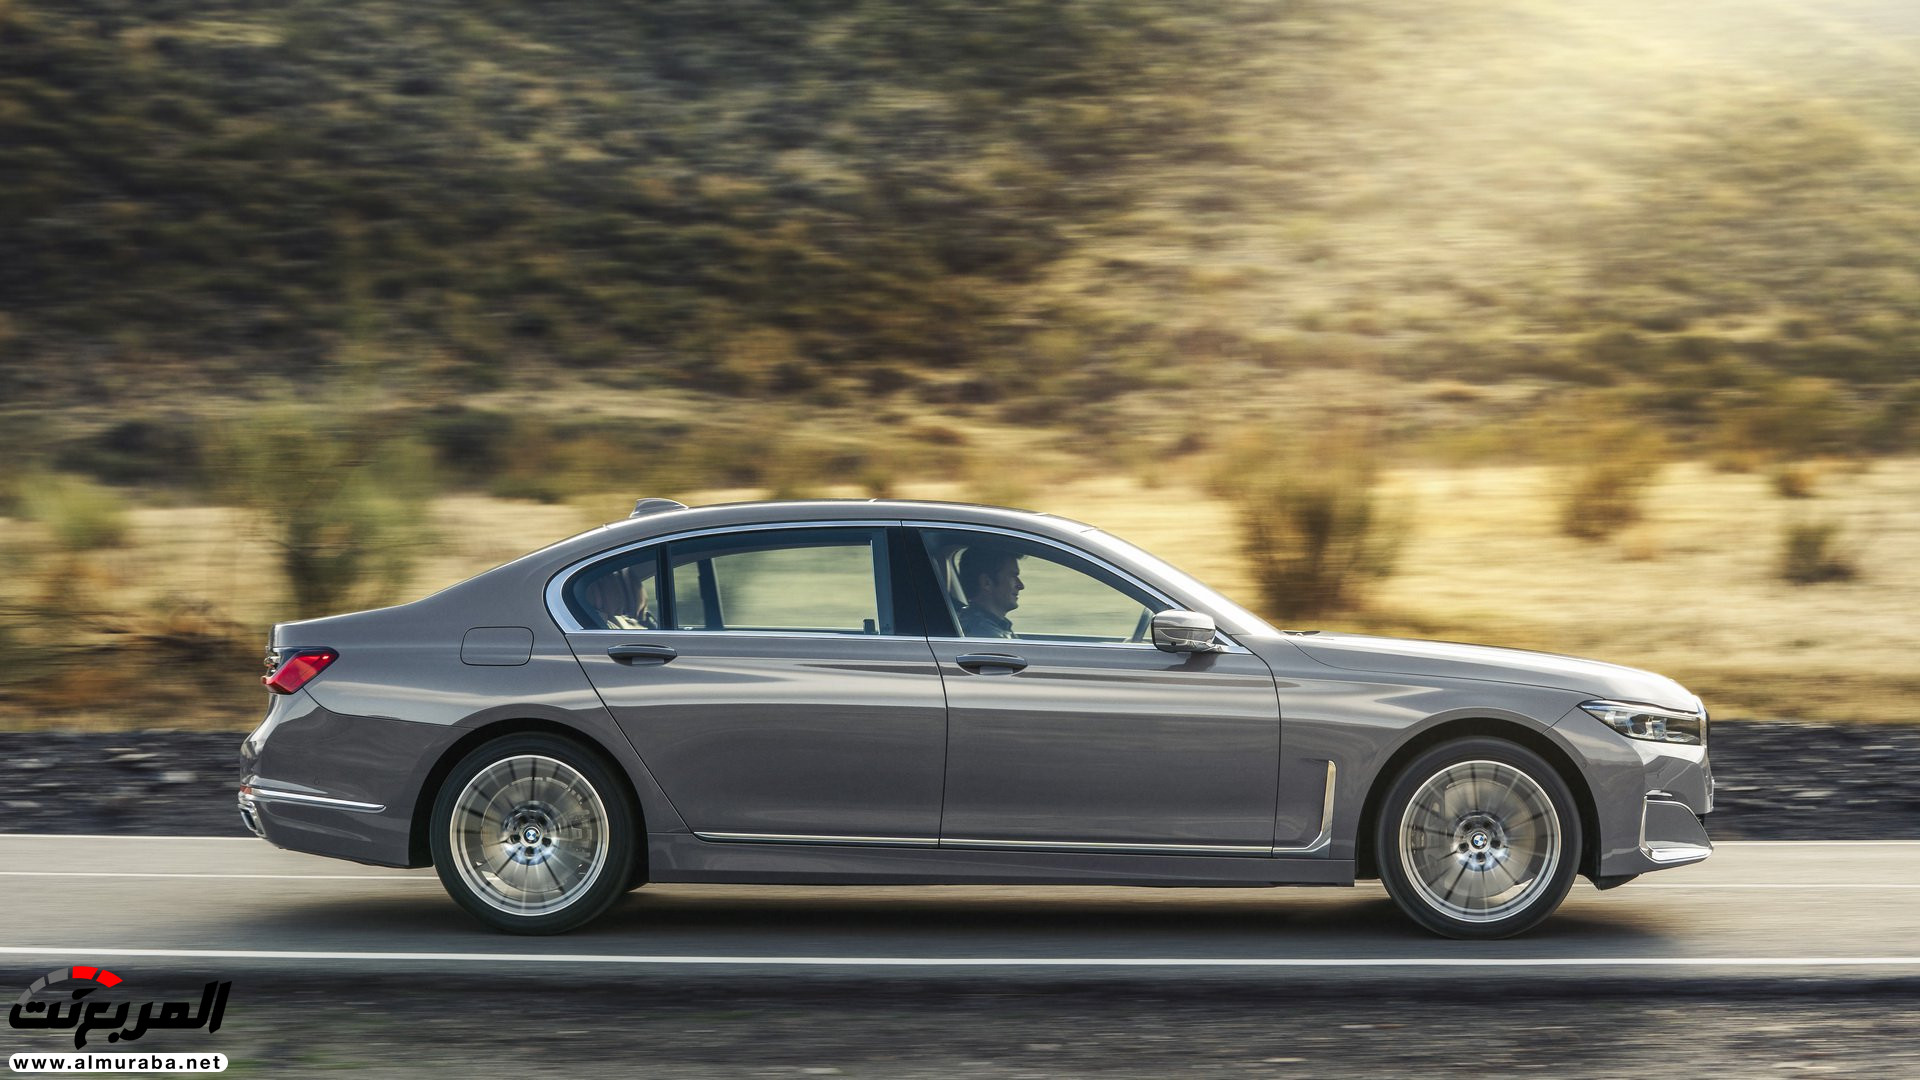 بي ام دبليو الفئة السابعة 2020 المحدثة تكشف نفسها رسمياً "صور ومواصفات" BMW 7 Series 39